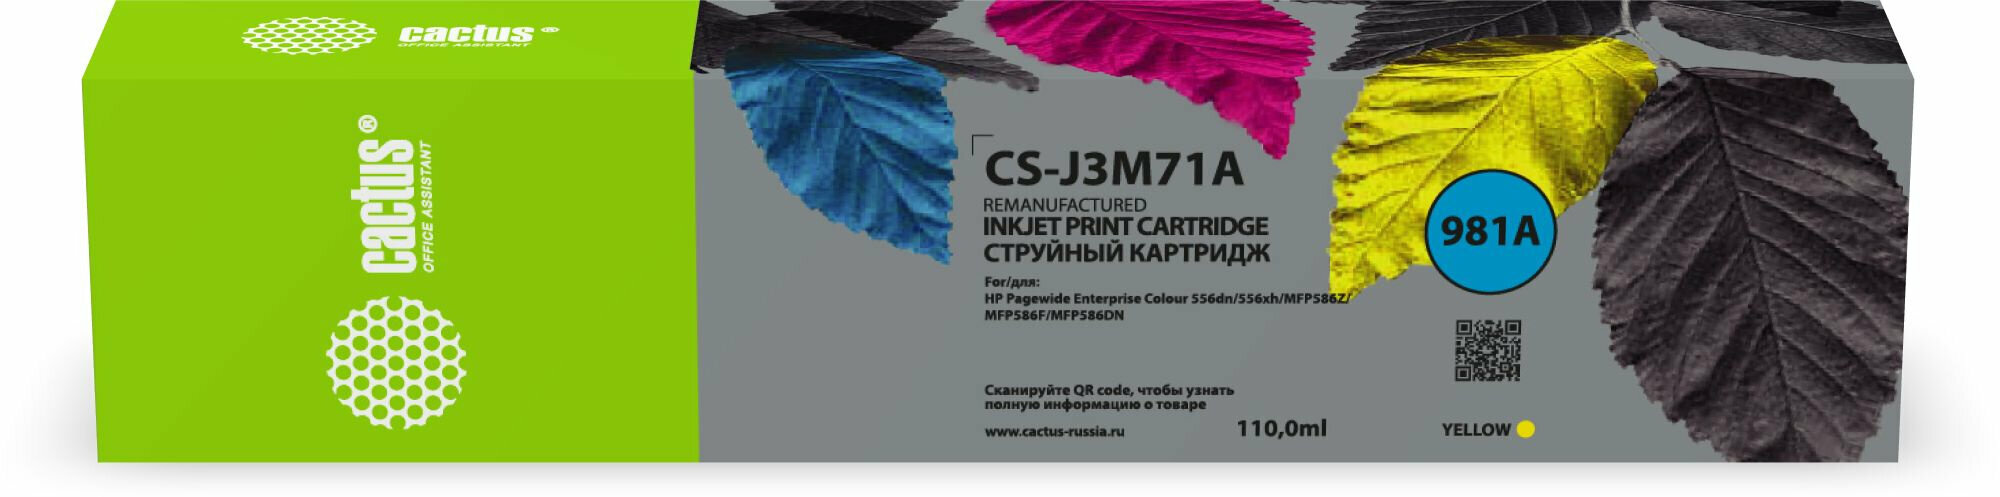 Картридж Cactus CS-J3M71A 981A черный - фото №2